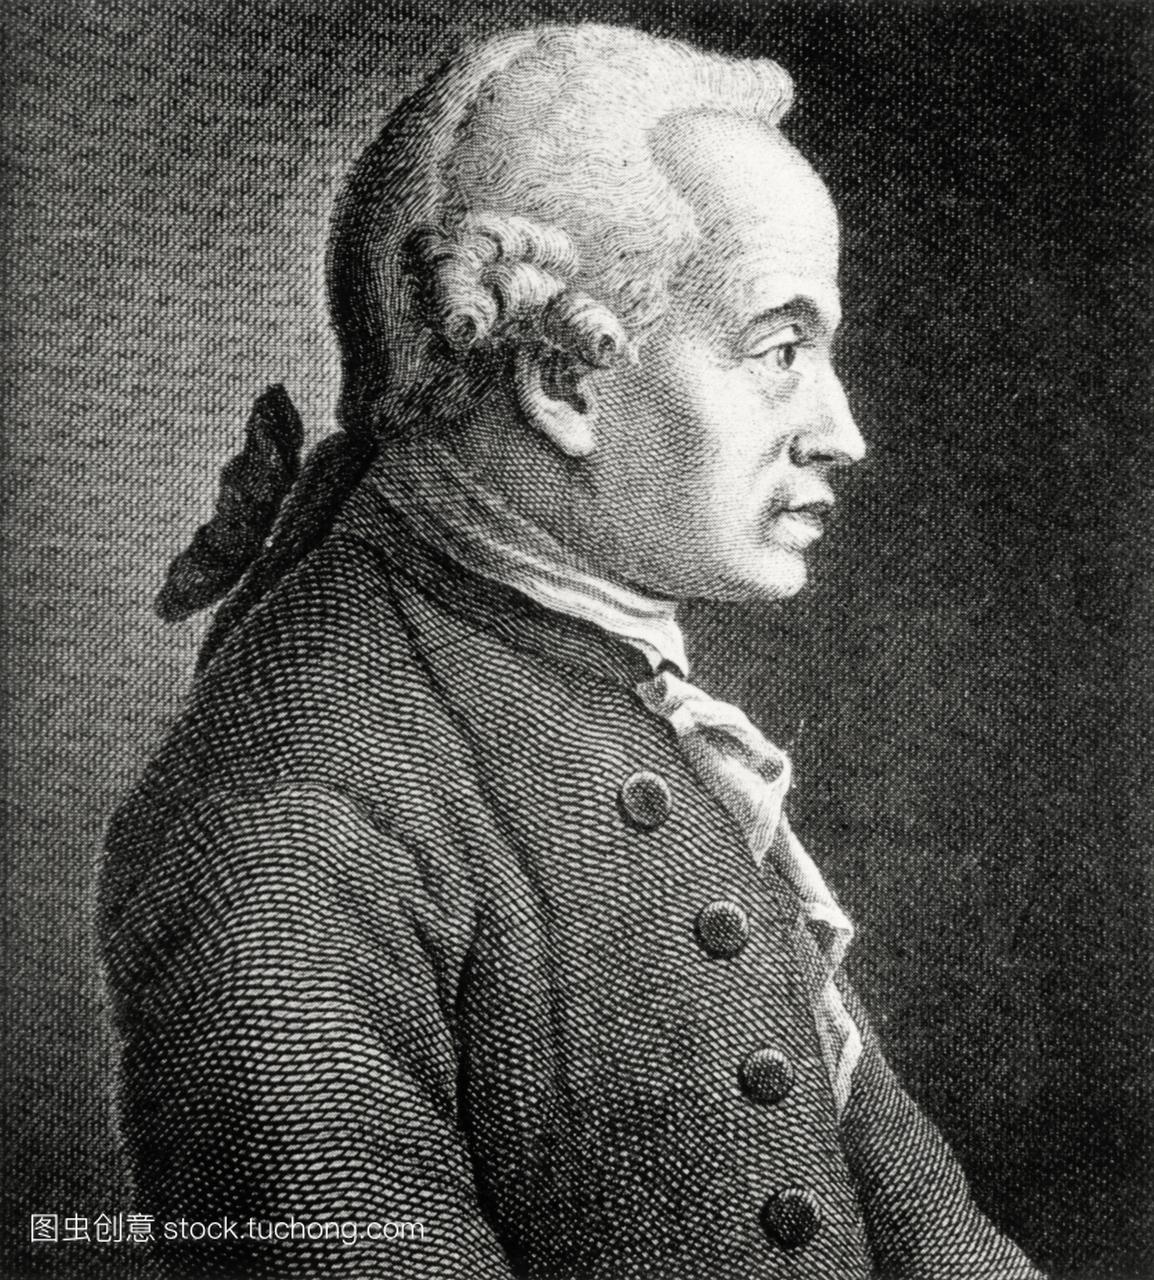 国哲学家康德的画像1724-1804。康德在自然科